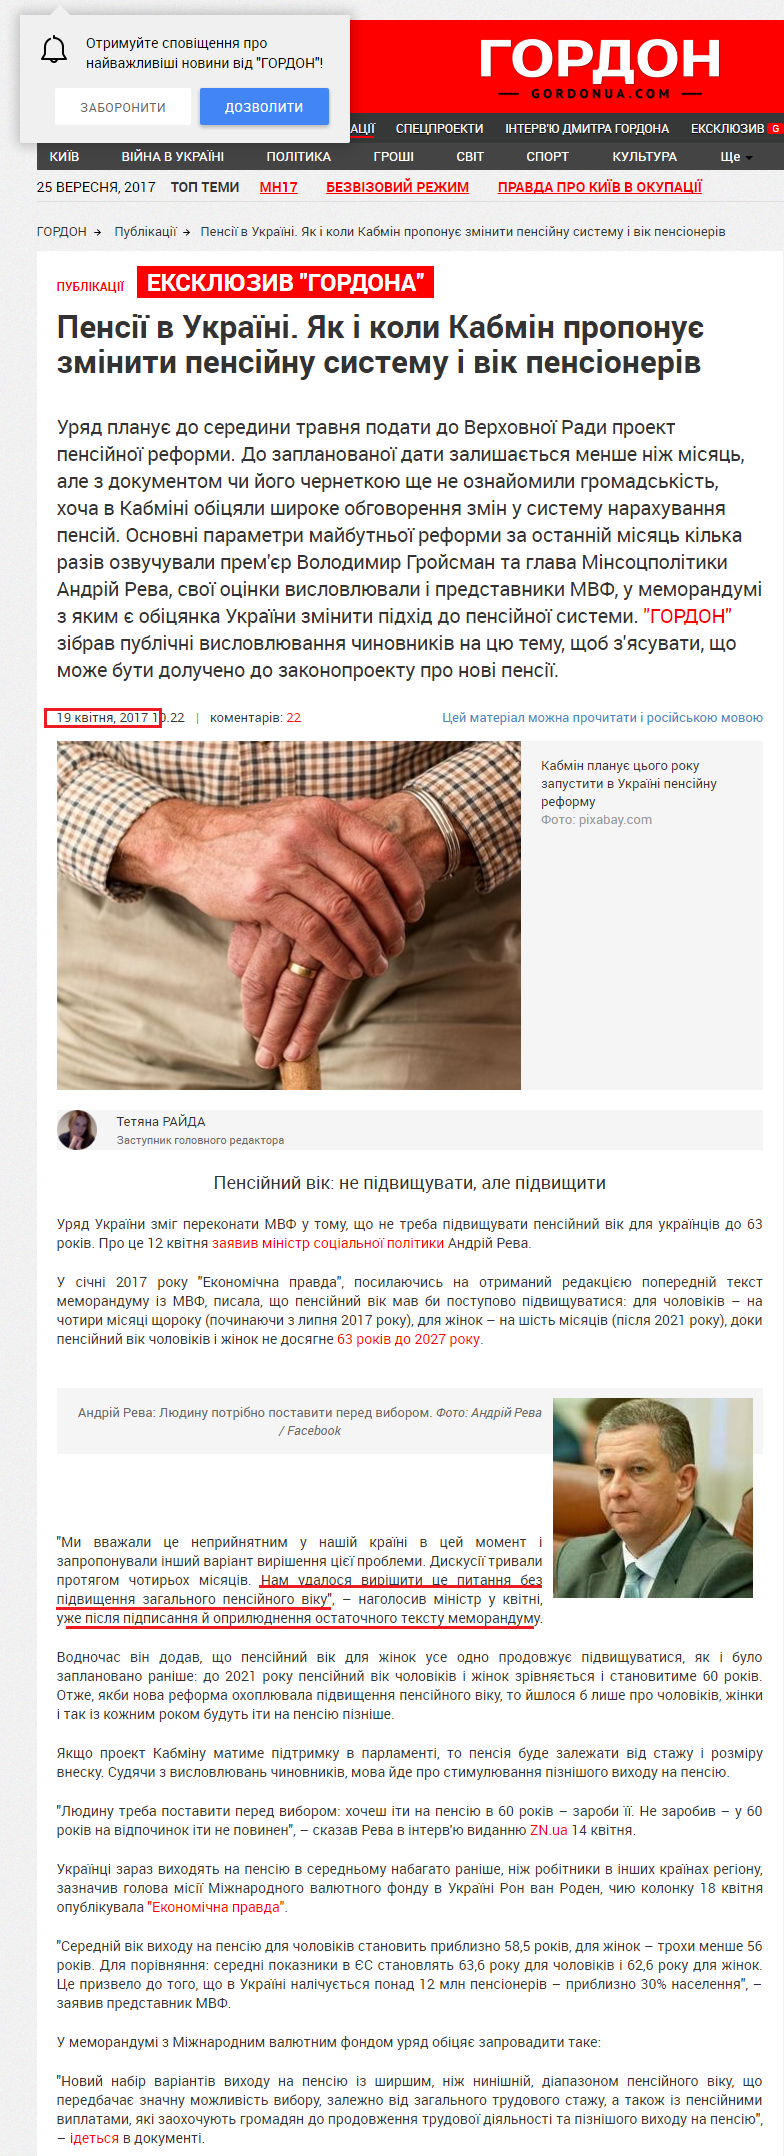 http://gordonua.com/ukr/publications/pensiji-v-ukrajini-jak-i-koli-kabmin-proponuje-zminiti-pensijnu-sistemu-i-vik-pensioneriv-183908.html